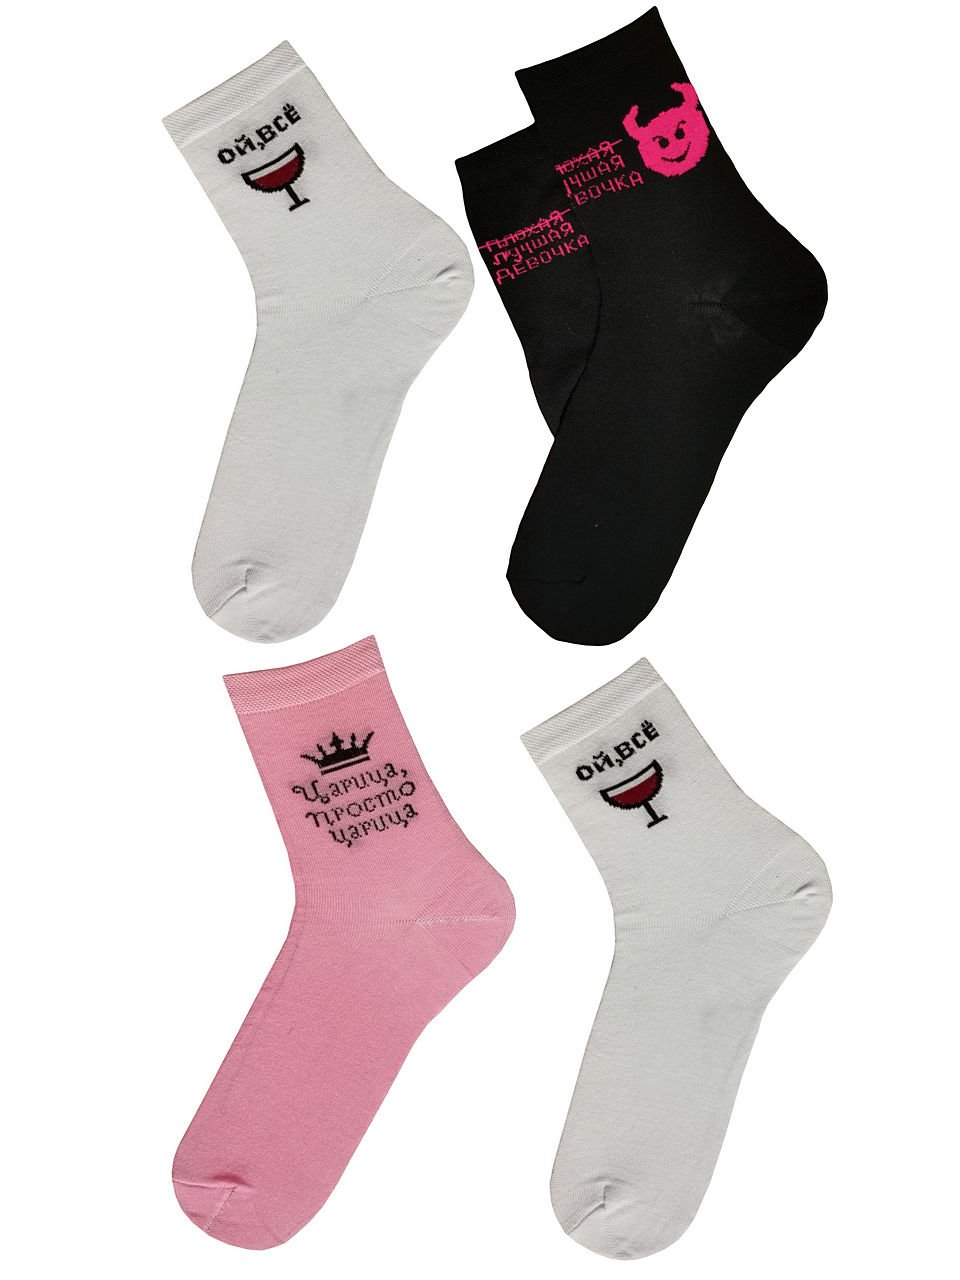 JKCNG11 Комплект женских носков 4 пары Микс-черный_белый_розовый